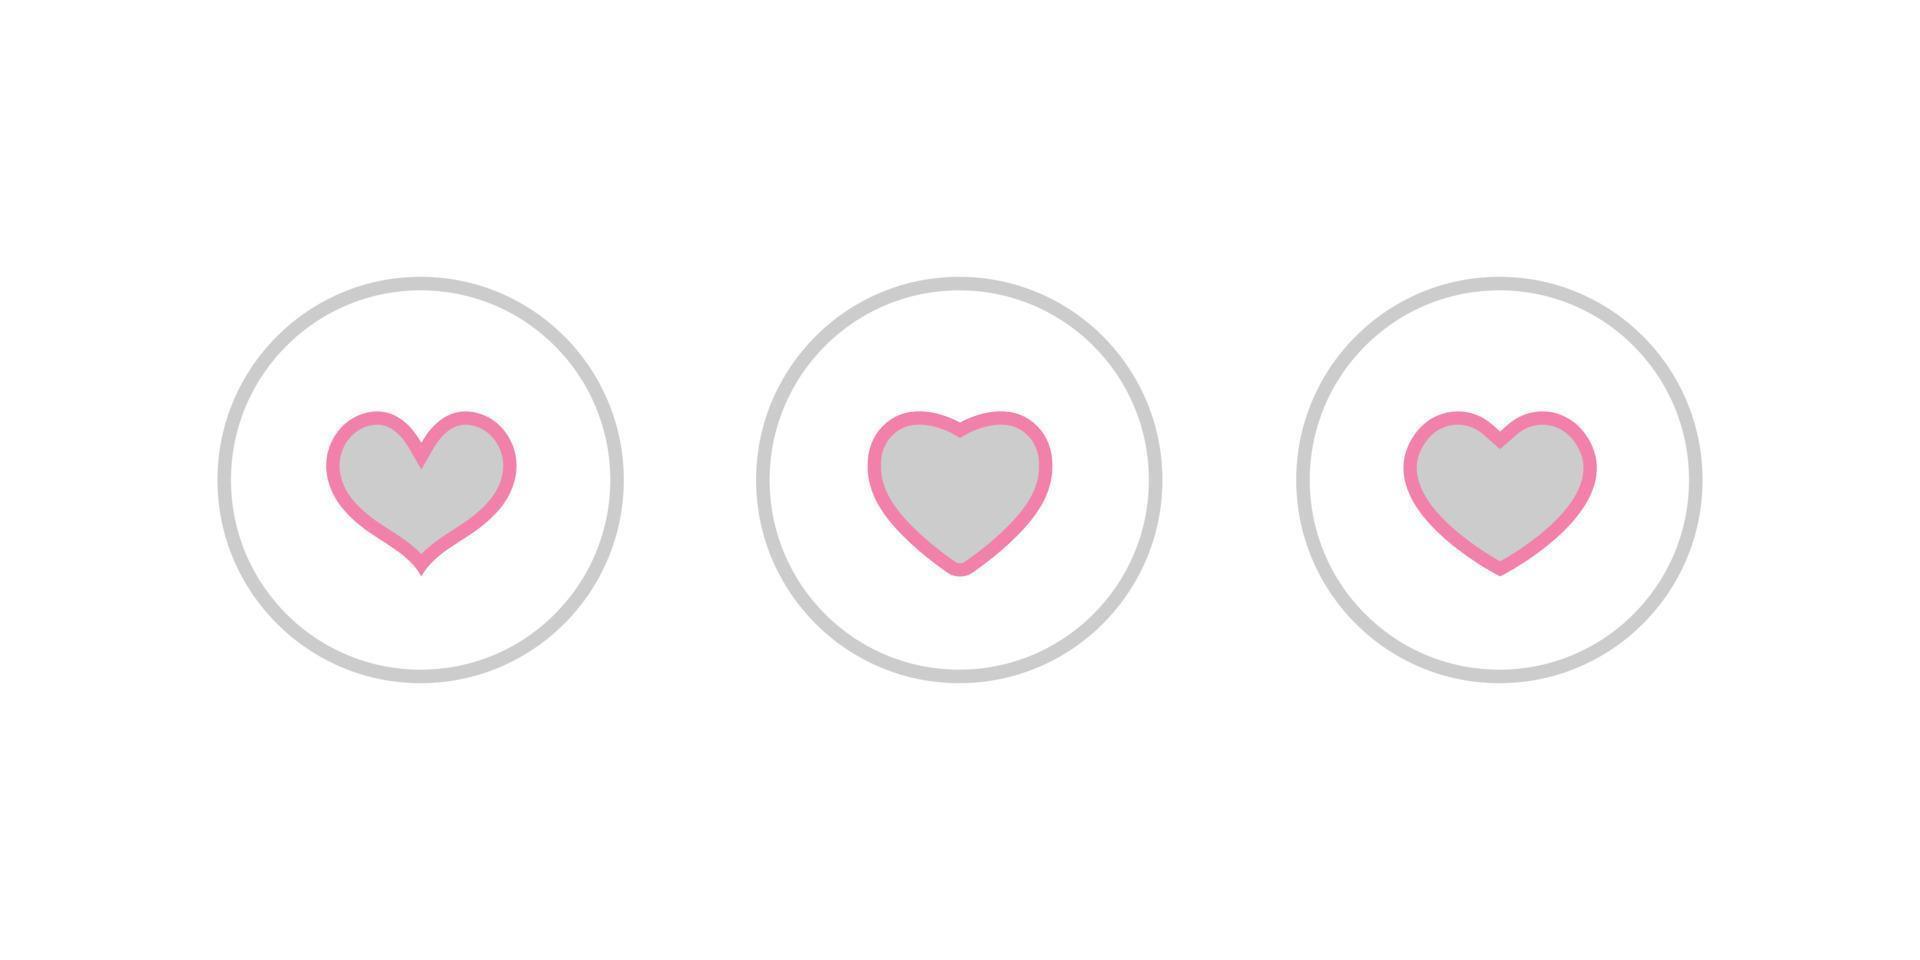 roze liefde, hart icon set collectie. vector illustratie